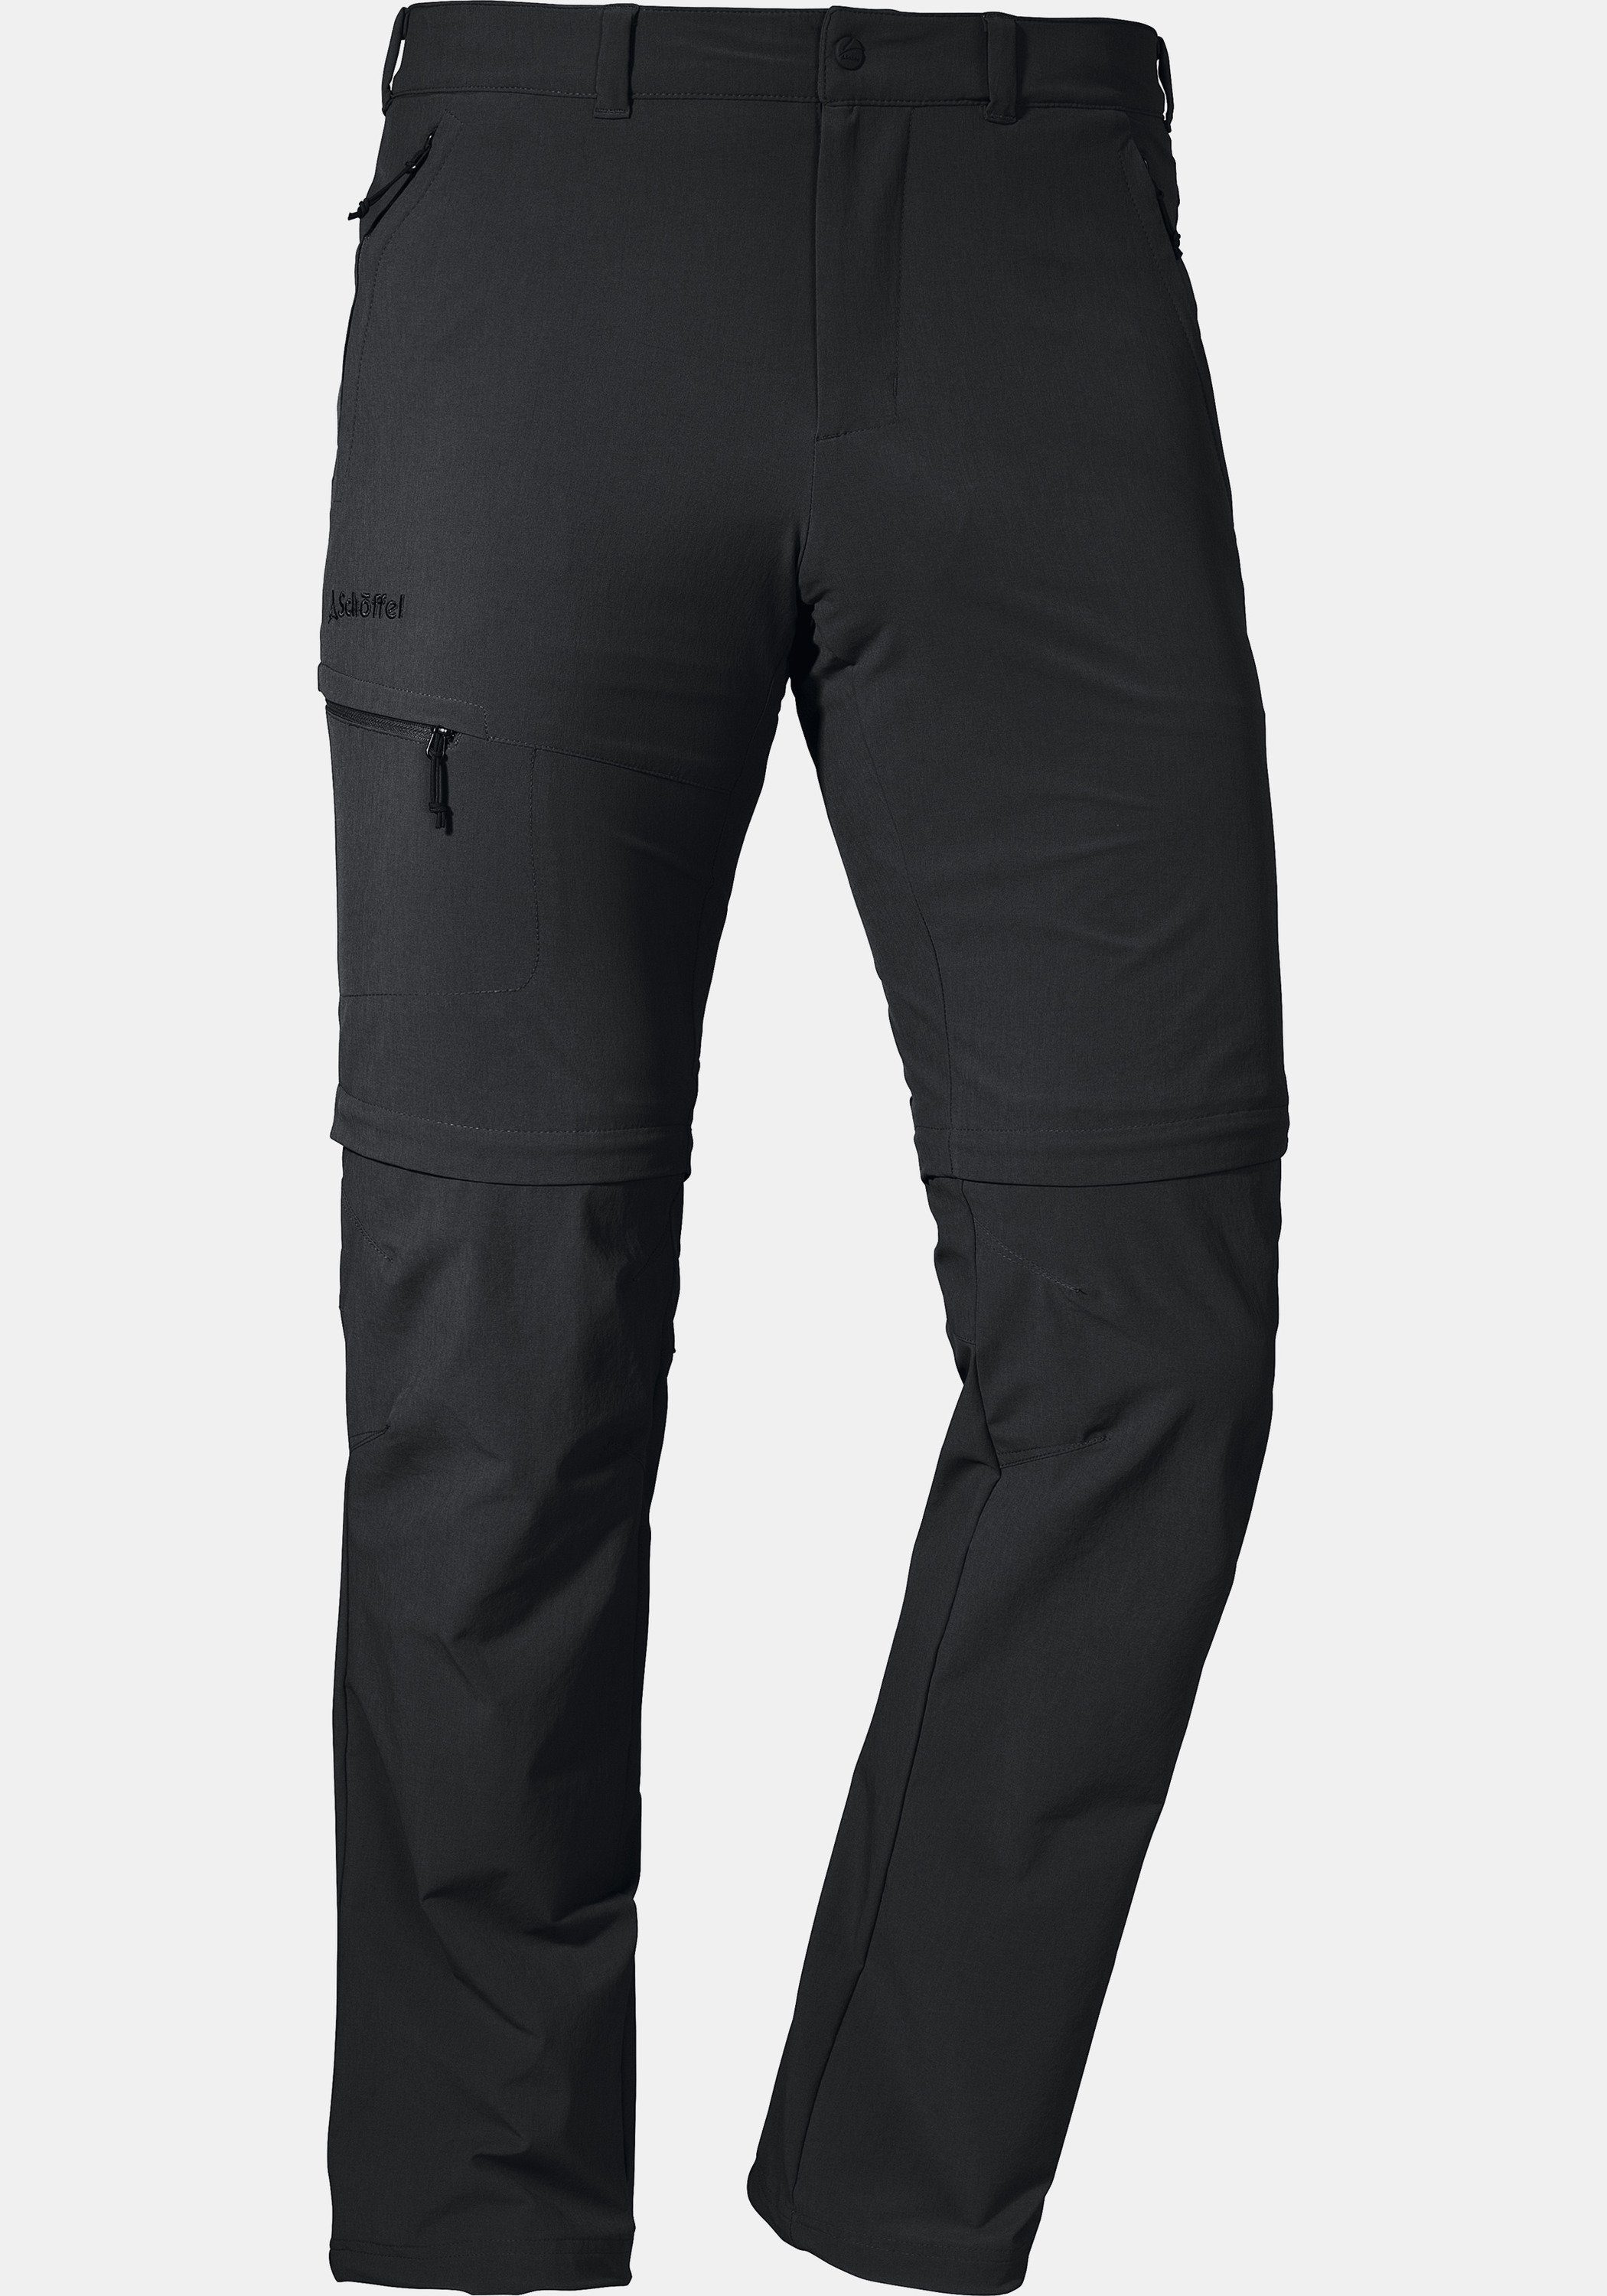 Schöffel Zip-away-Hose Zip Off Koper1 Pants schwarz